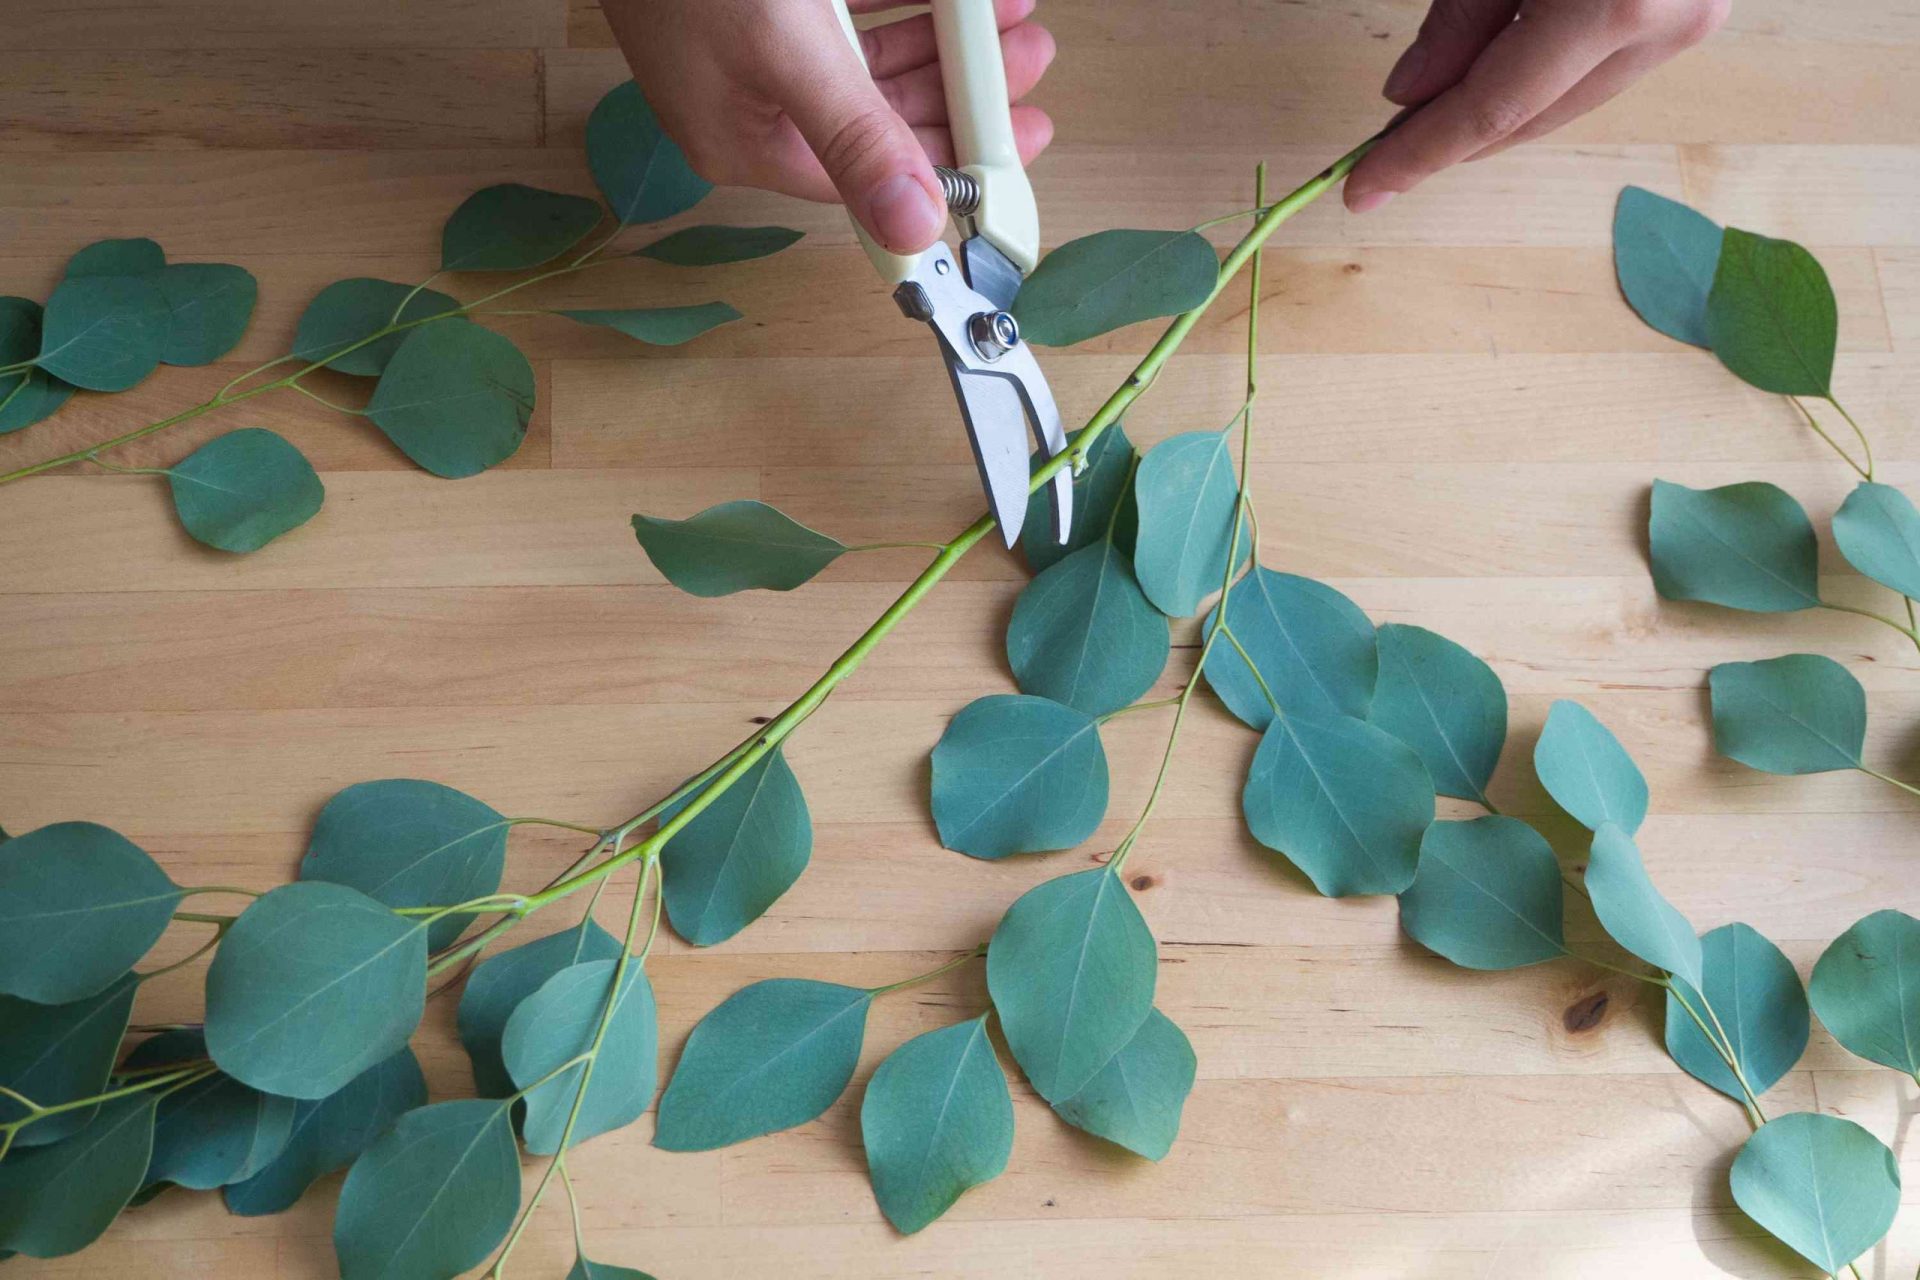 manos utilizar tijeras de podar para cortar las ramas de eucalipto en una longitud más corta para colgar